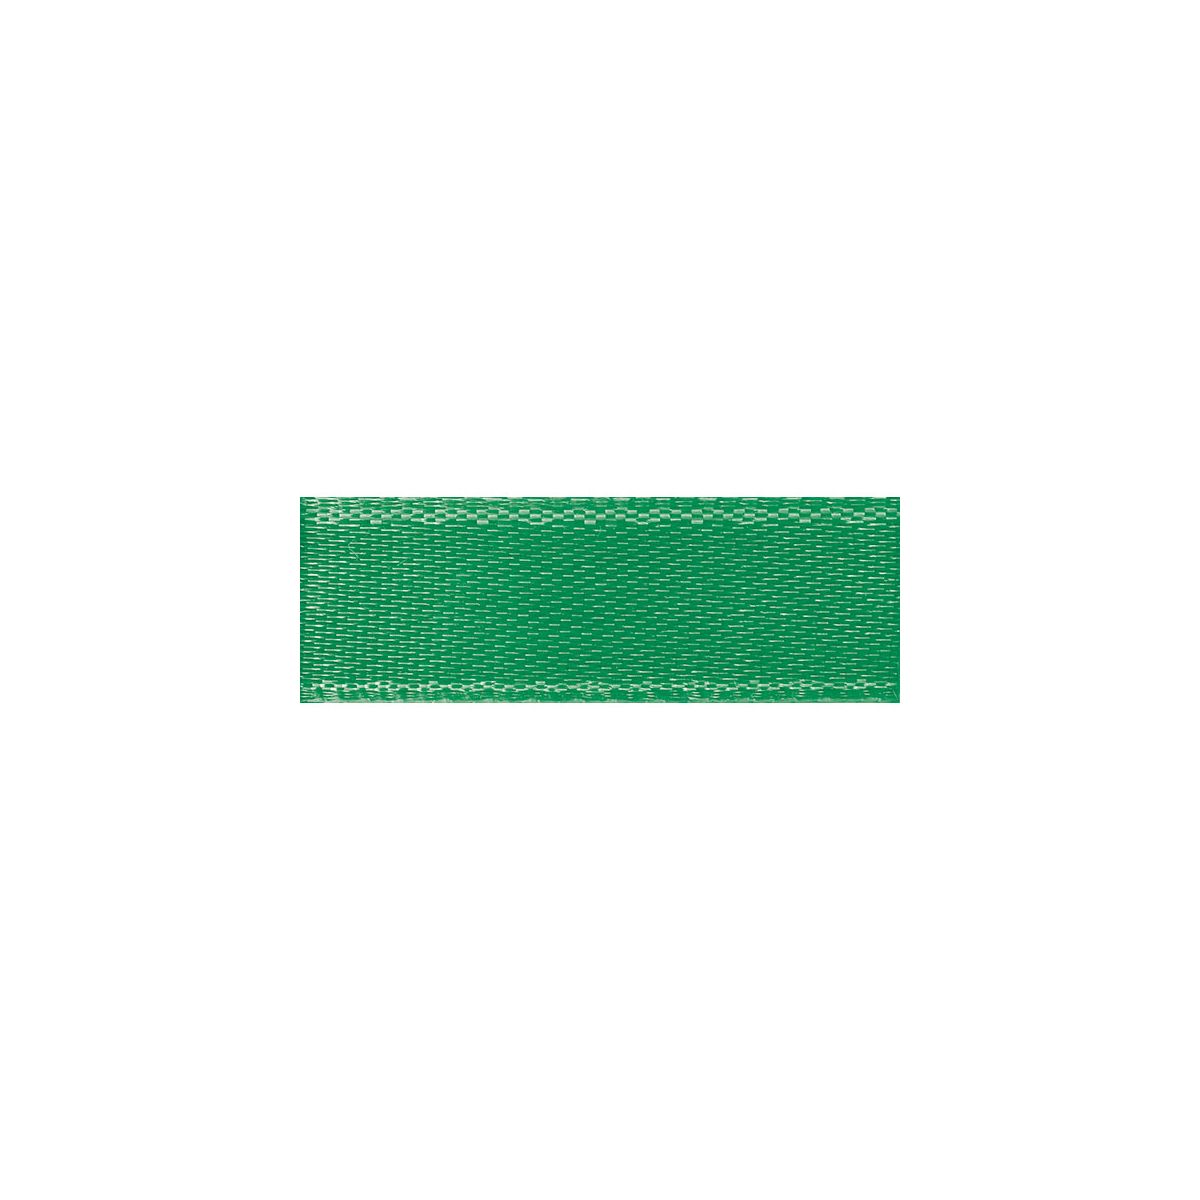 Wstążka Titanum Craft-Fun Series satynowa 25mm zielony 25m (25/25/19)